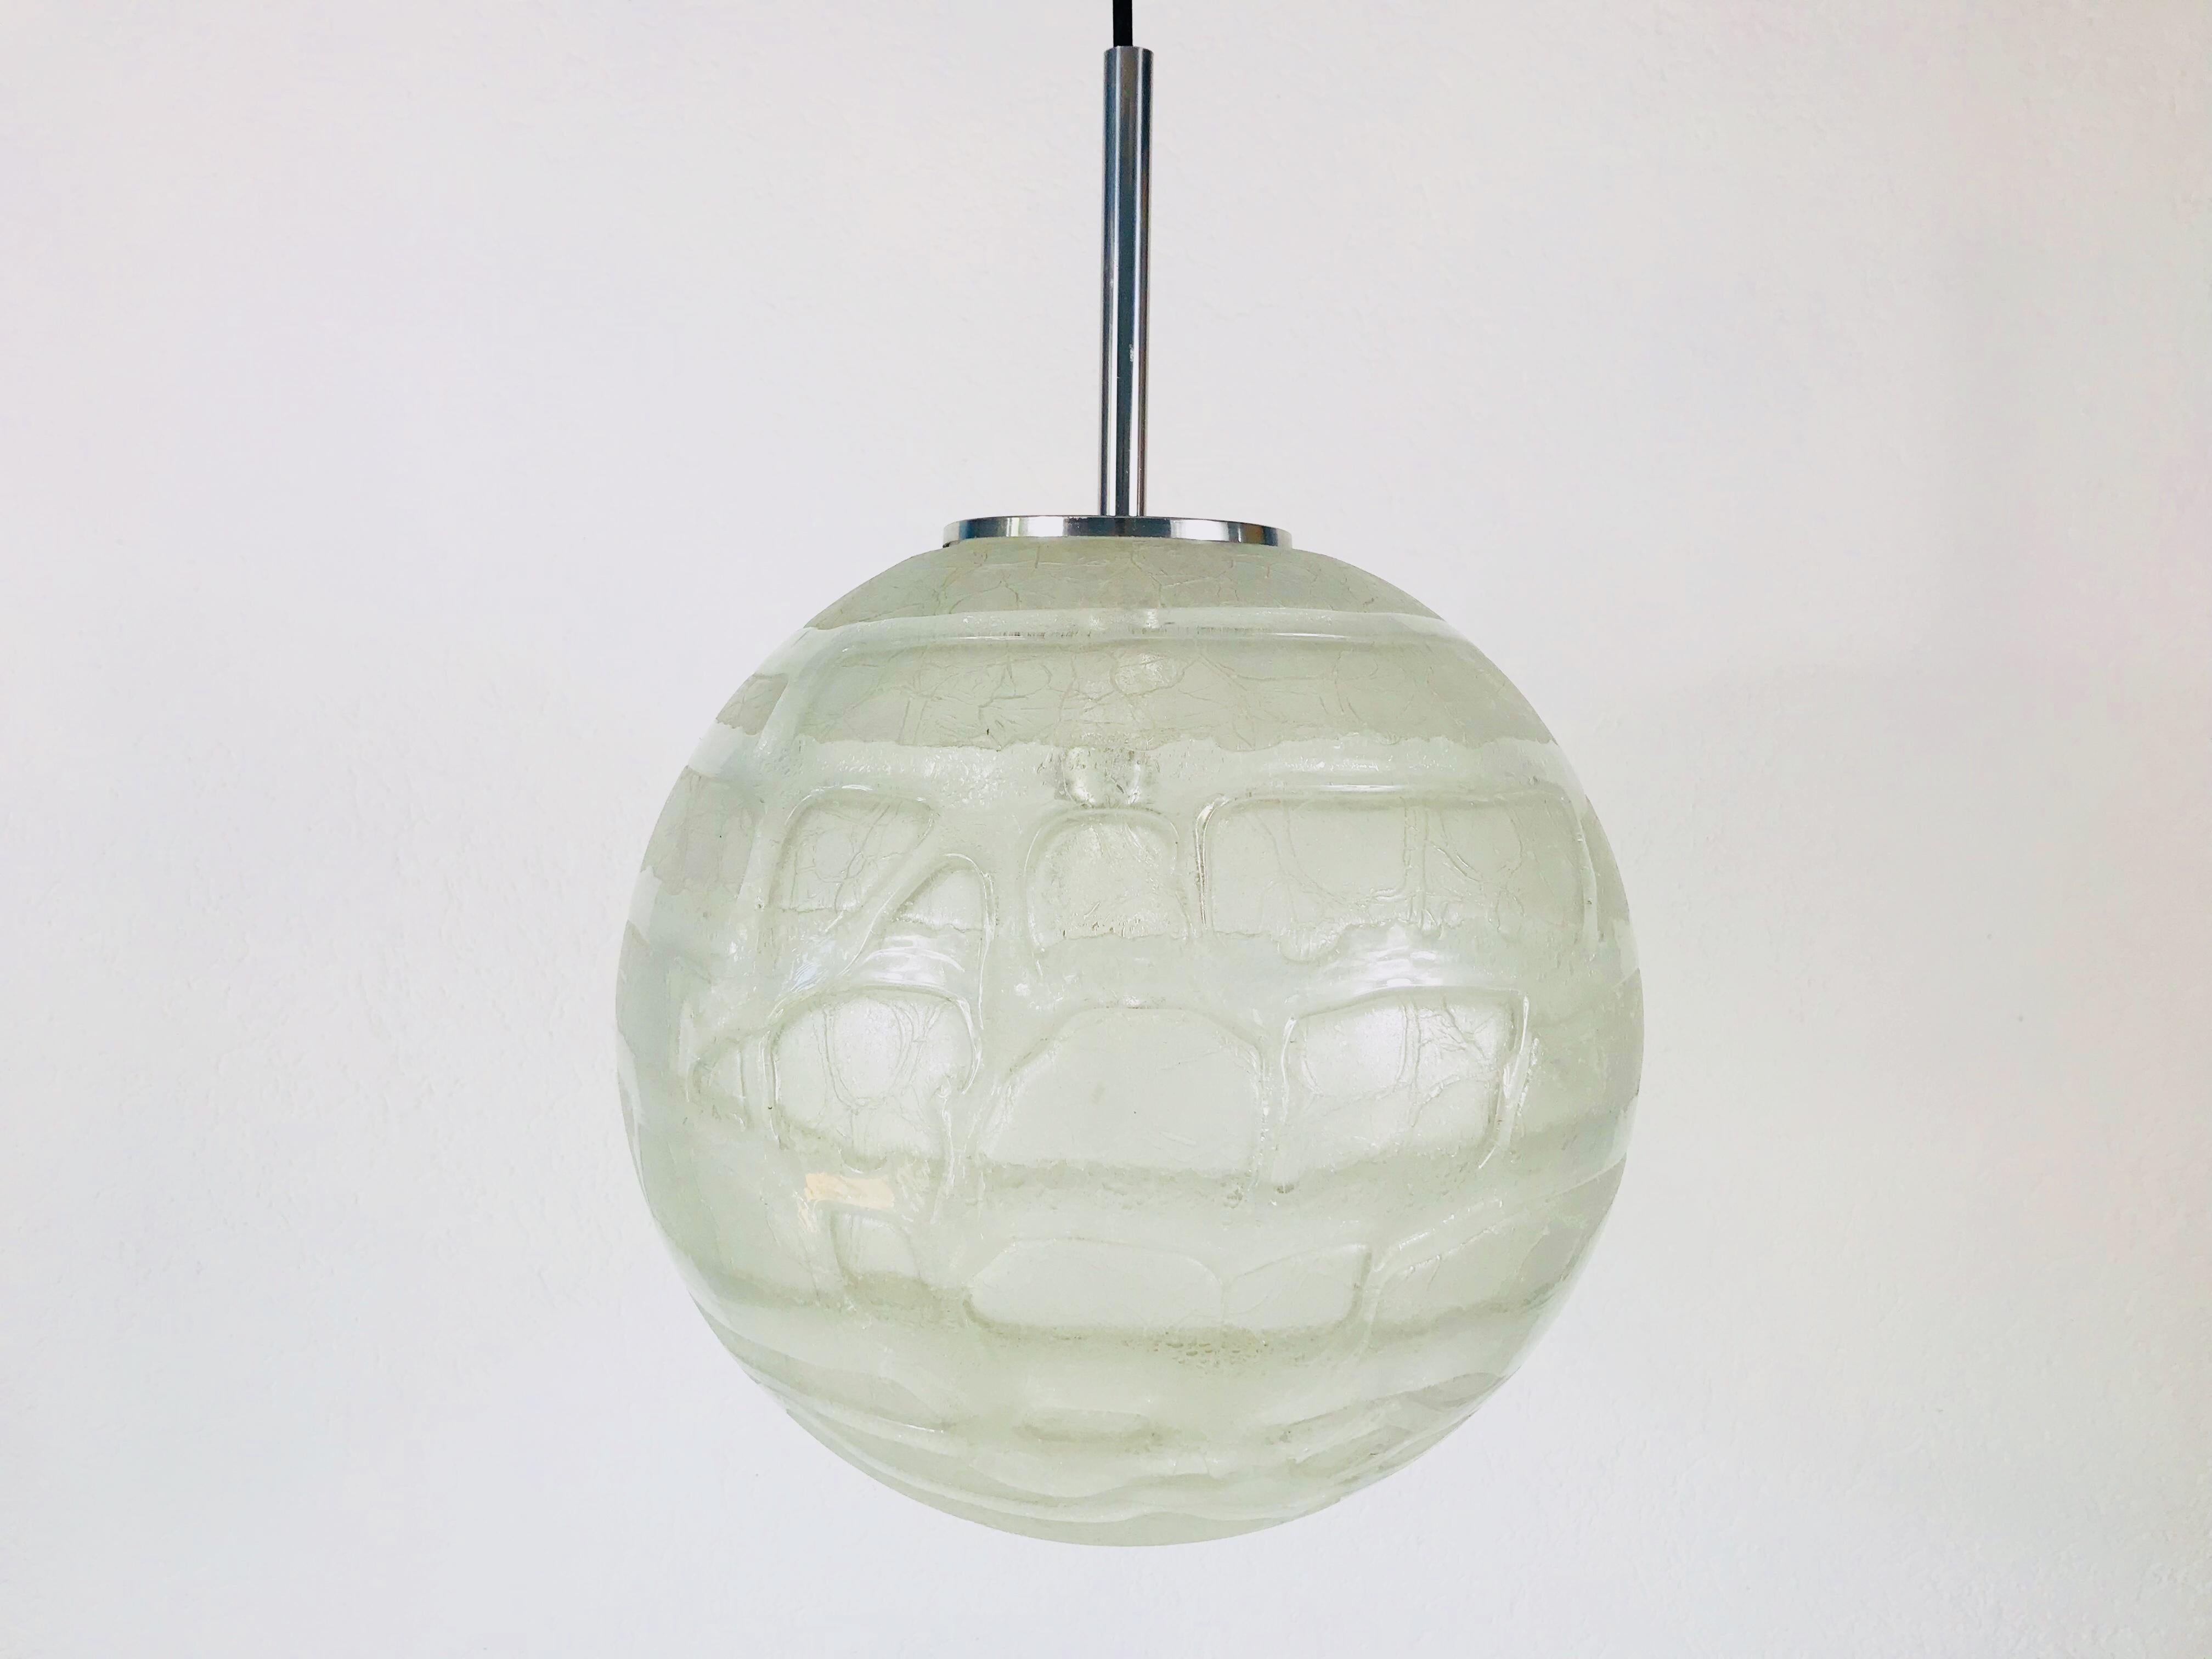 Eine schöne Hängelampe aus Glas, hergestellt in Deutschland in den 1970er Jahren. Die Leuchte ist aus Muranoglas gefertigt. Es hat eine erstaunlich transparente Farbe und ist sehr solide. Die Oberseite der Lampe ist aus verchromtem Aluminium.

Die